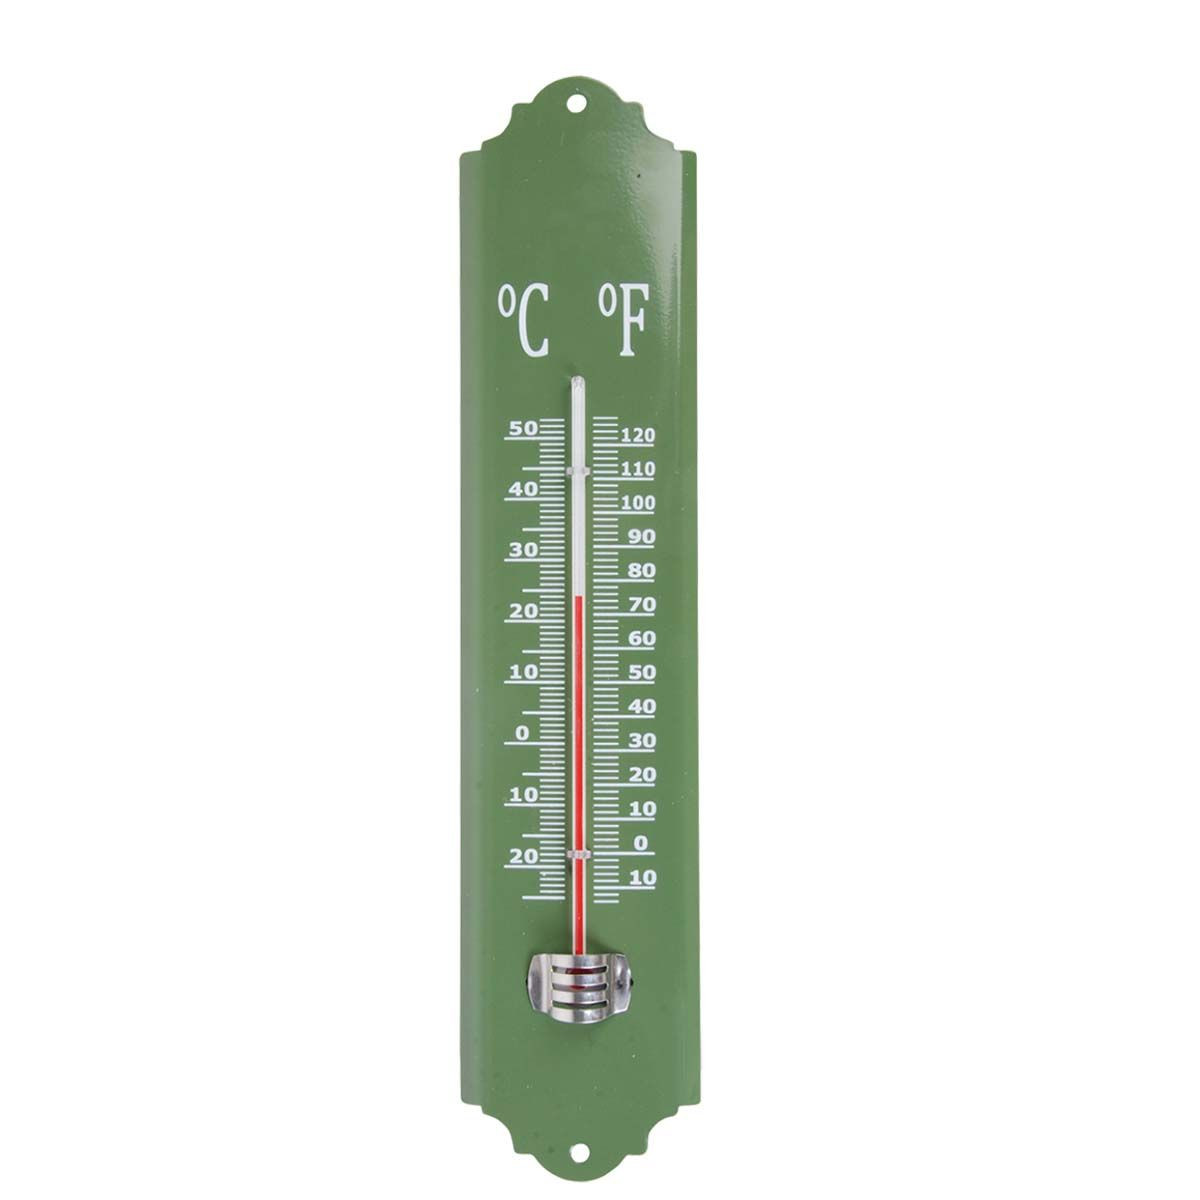 Thermomètre extérieur ESTARK - Thermomètre intérieur - Thermomètre